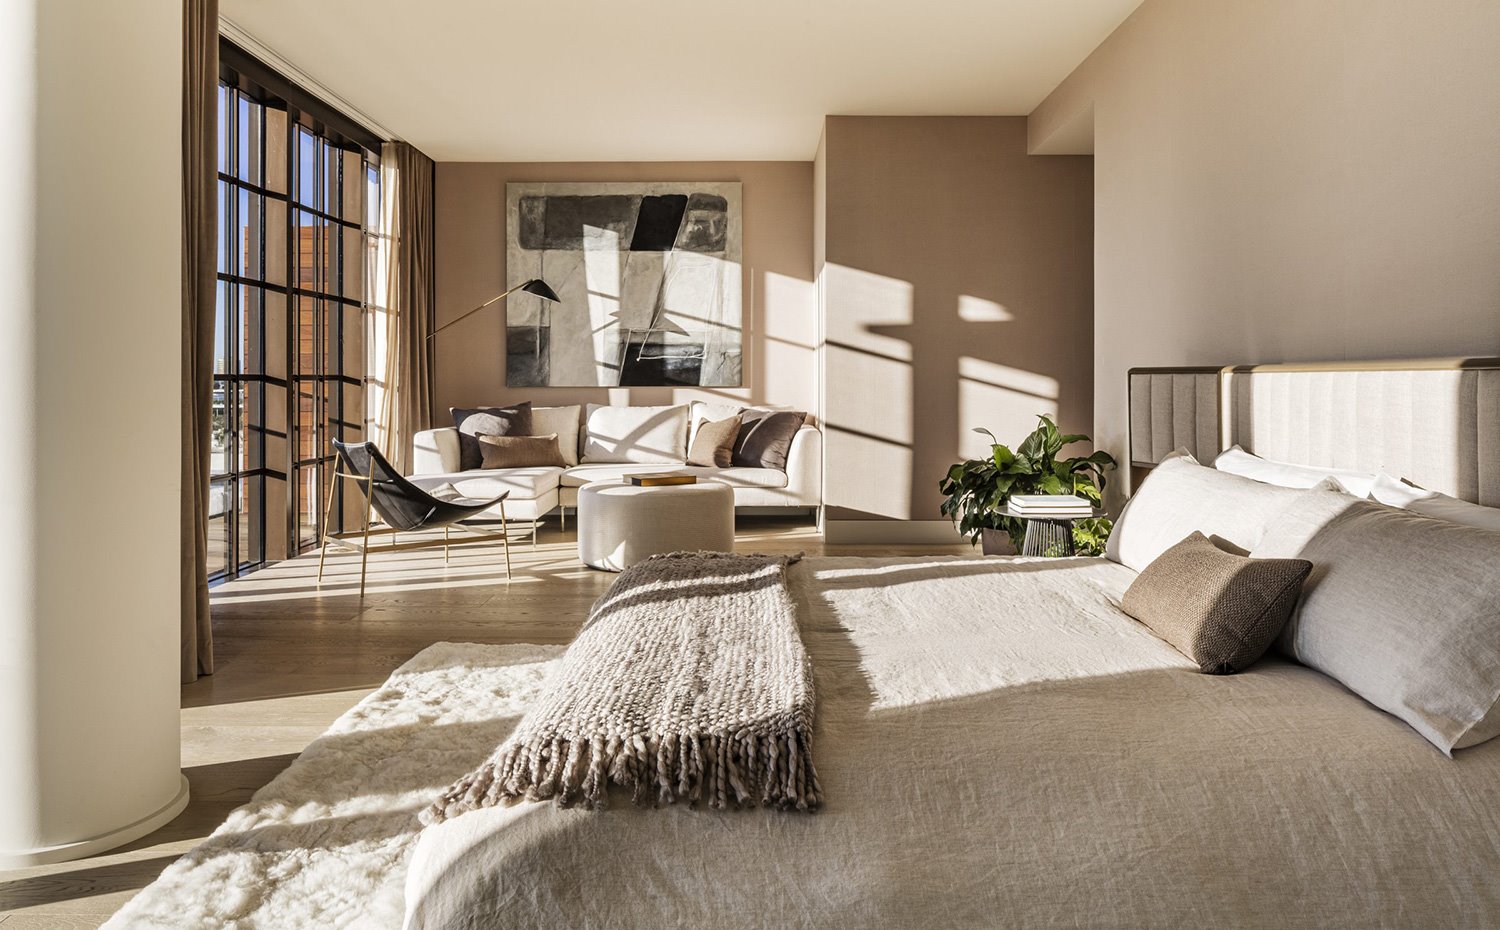 Dormitorio en tonos crudos, con zona de estar con sofá en tonos neturos y butiaca en negro, cerramiento acristalado con perfilería de aluminio